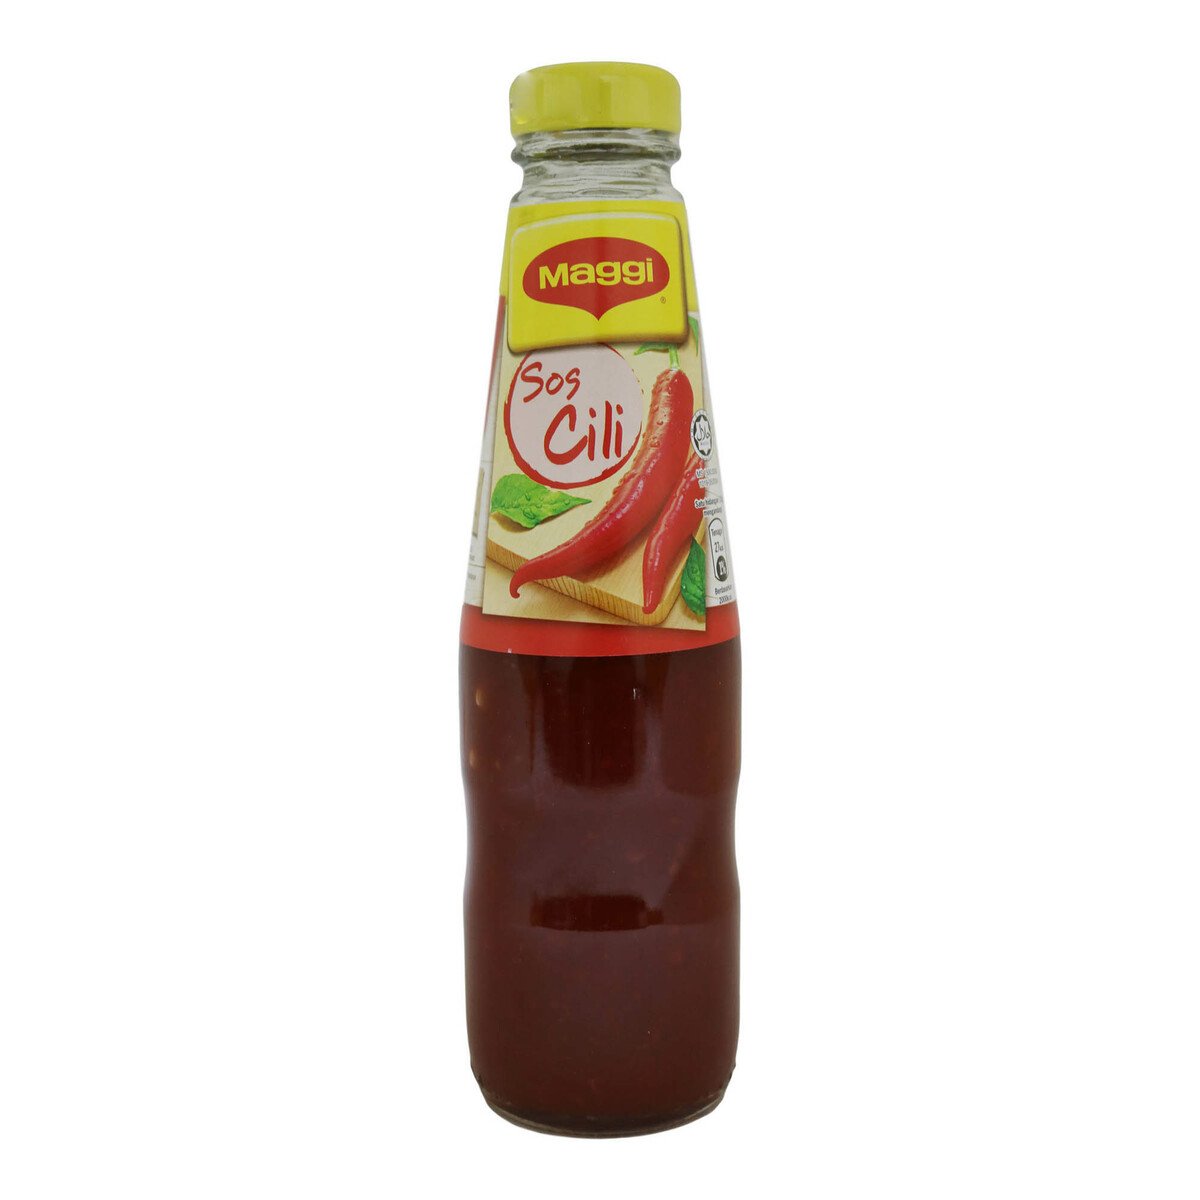 Maggi Chilli Sauce 340g